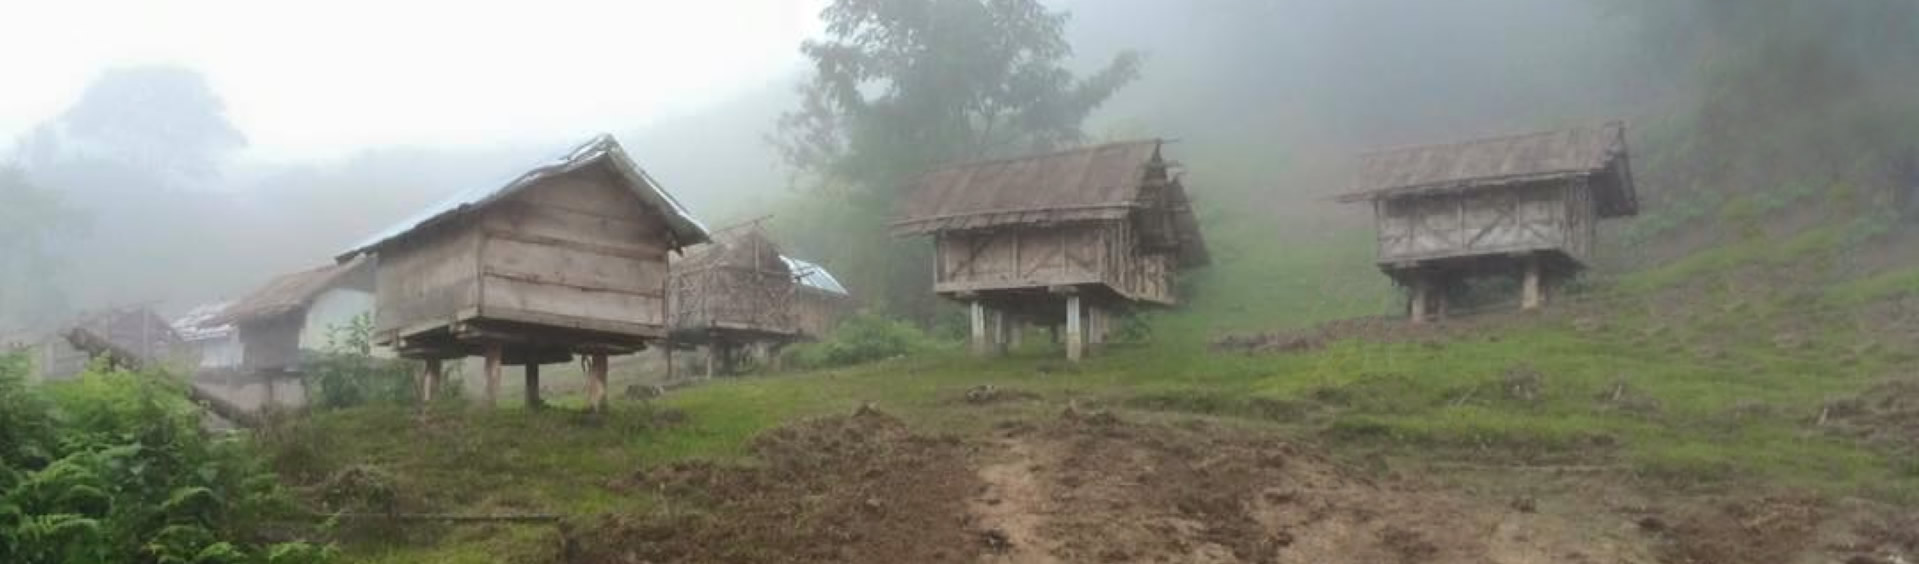 Rural village in Vietnam